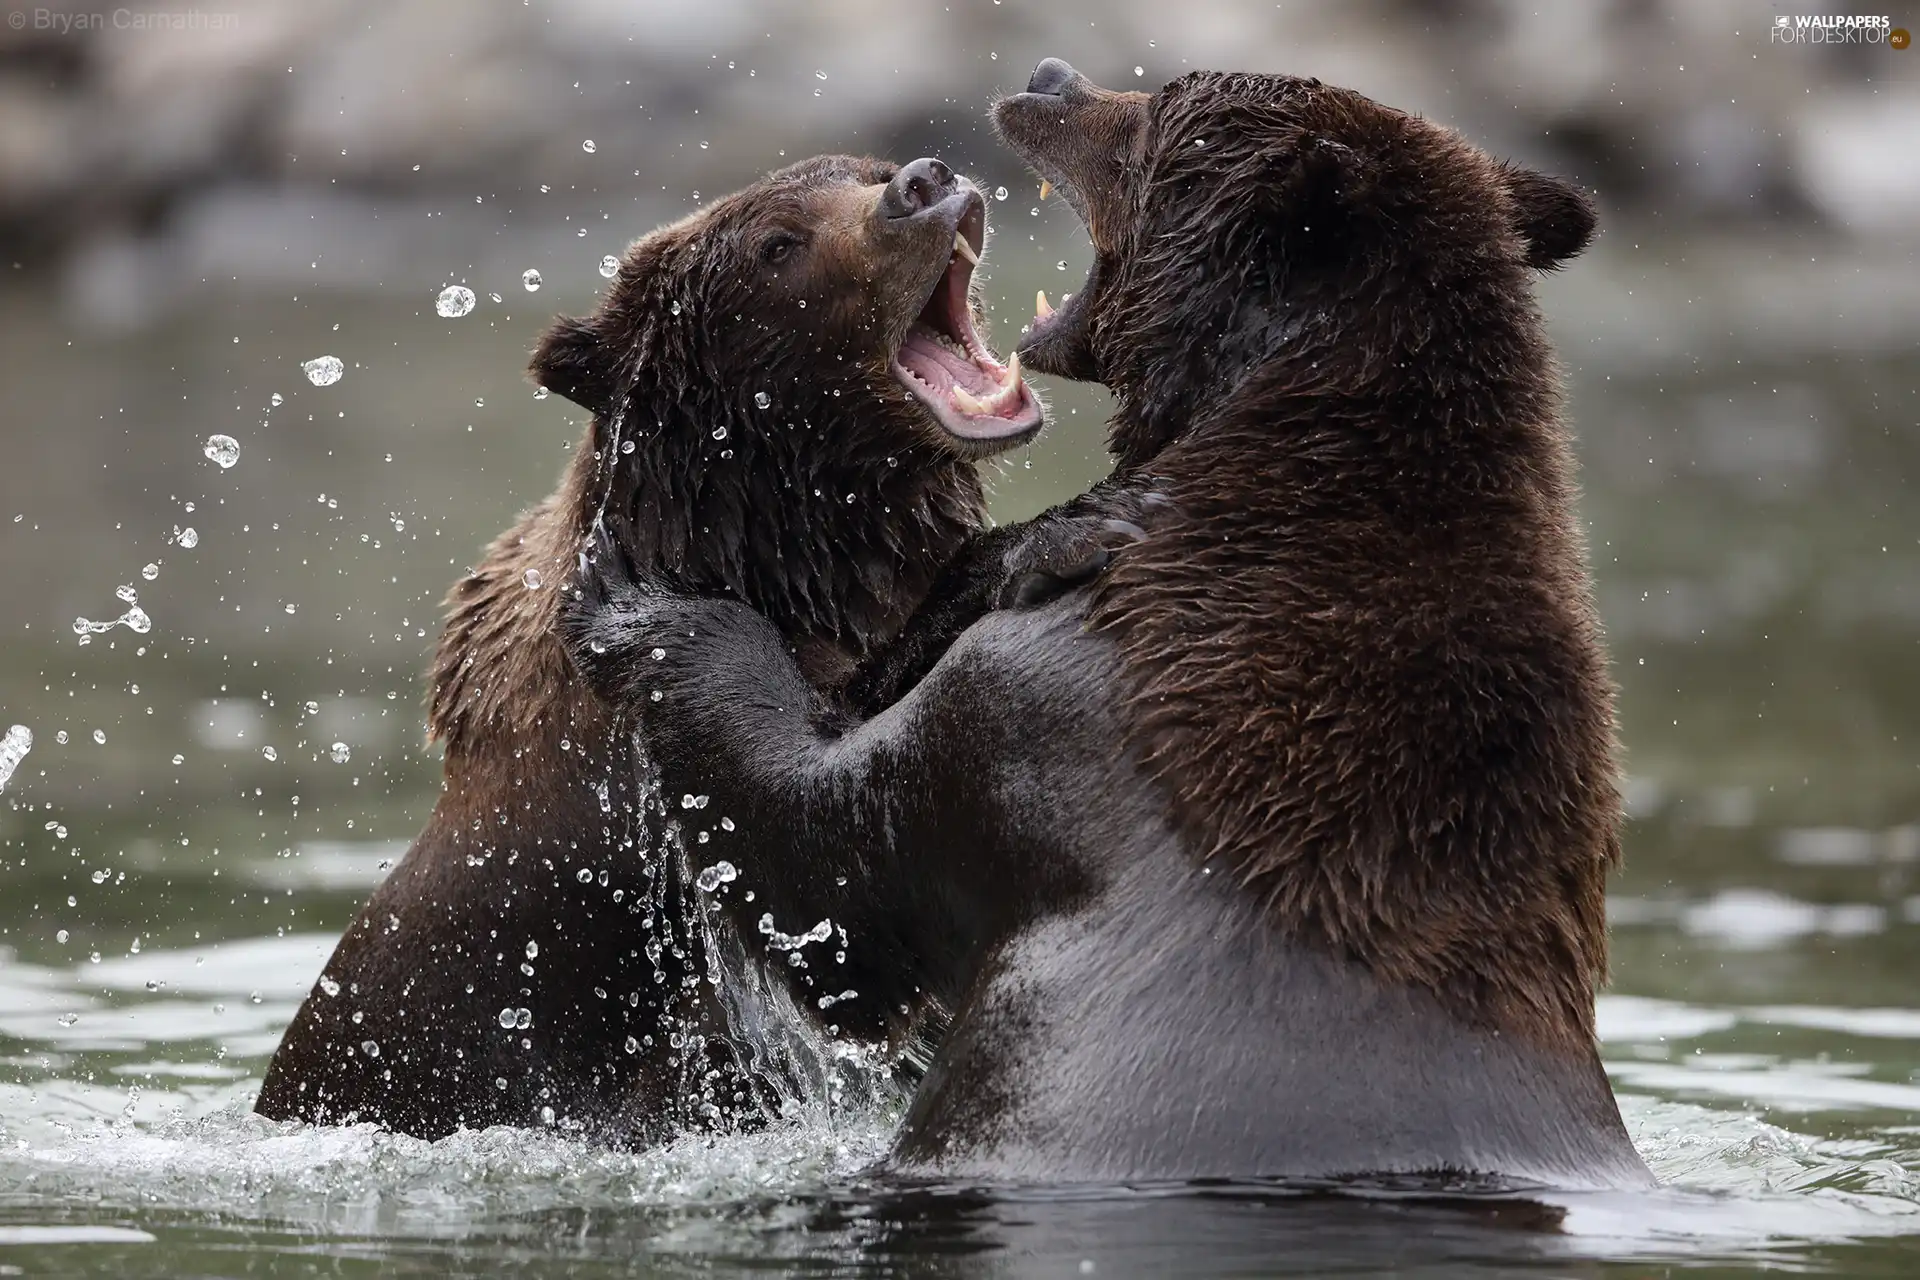 water, bears, rivalry